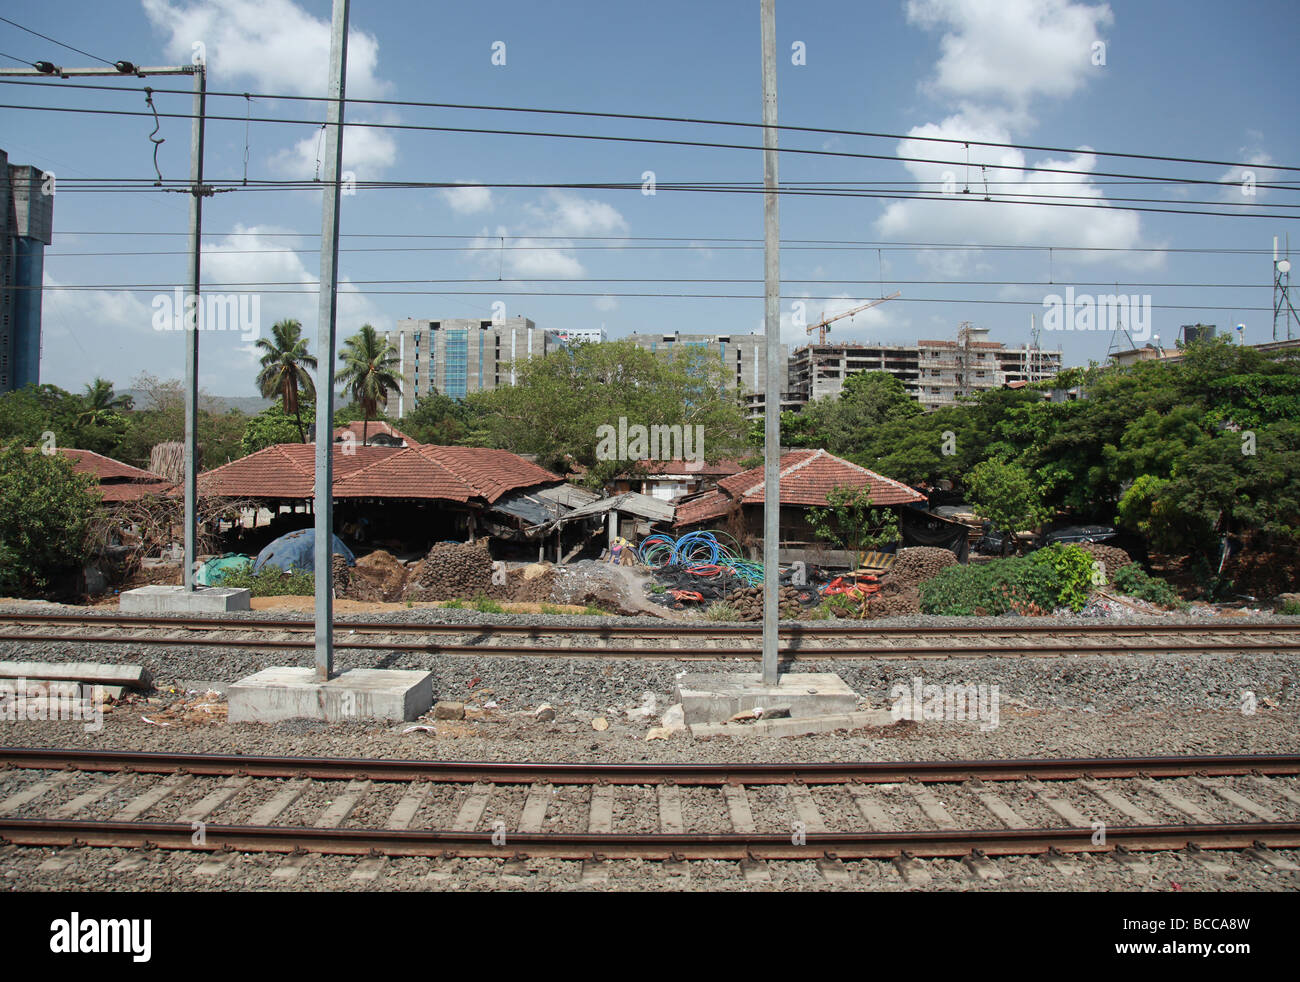 Réseau ferroviaire, Mumbai Inde Banque D'Images